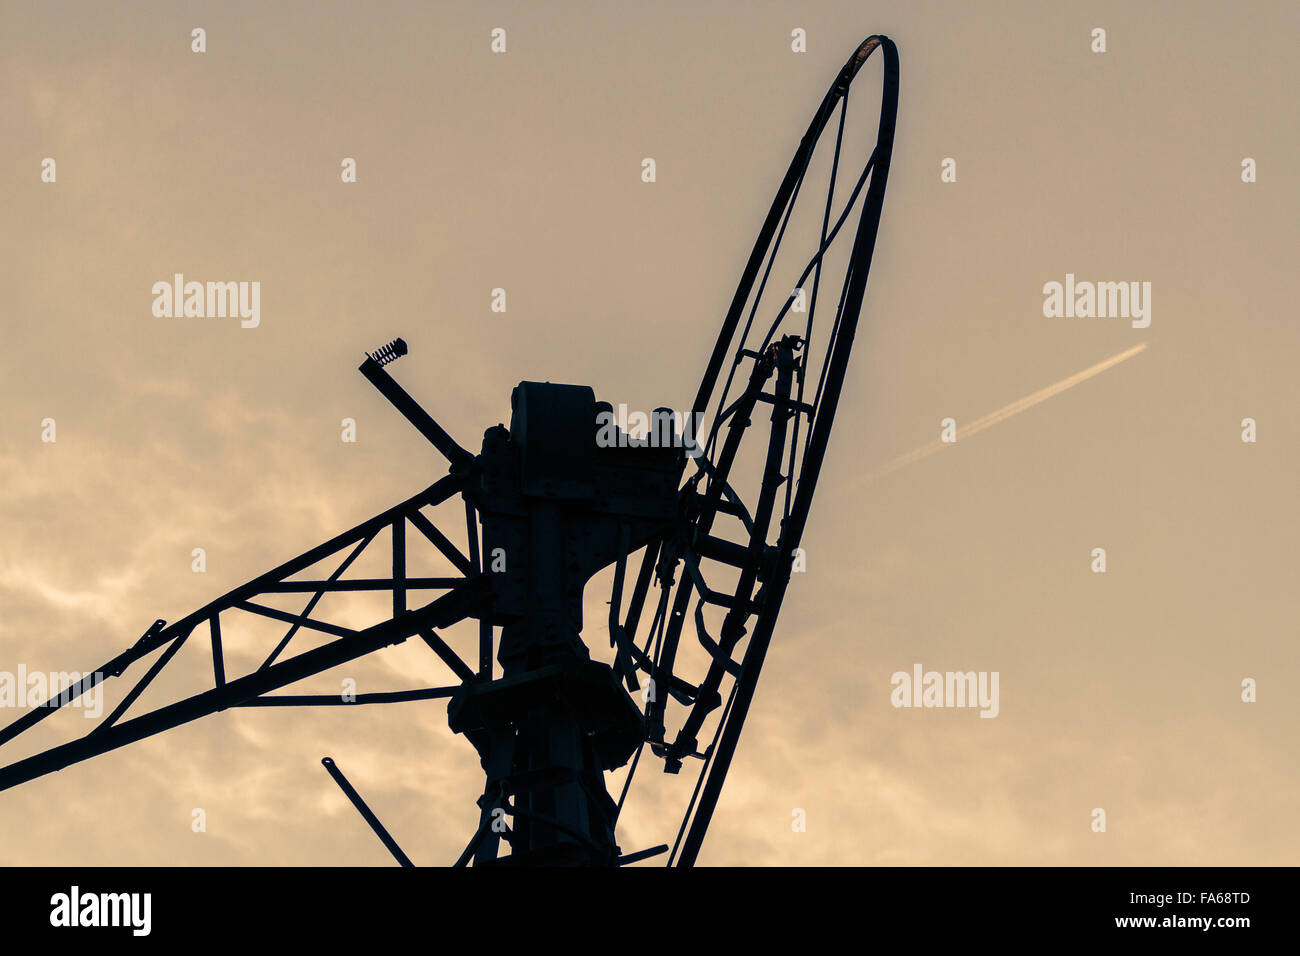 Silhouette d'un moulin à vent, Gueldre, Pays-Bas Banque D'Images